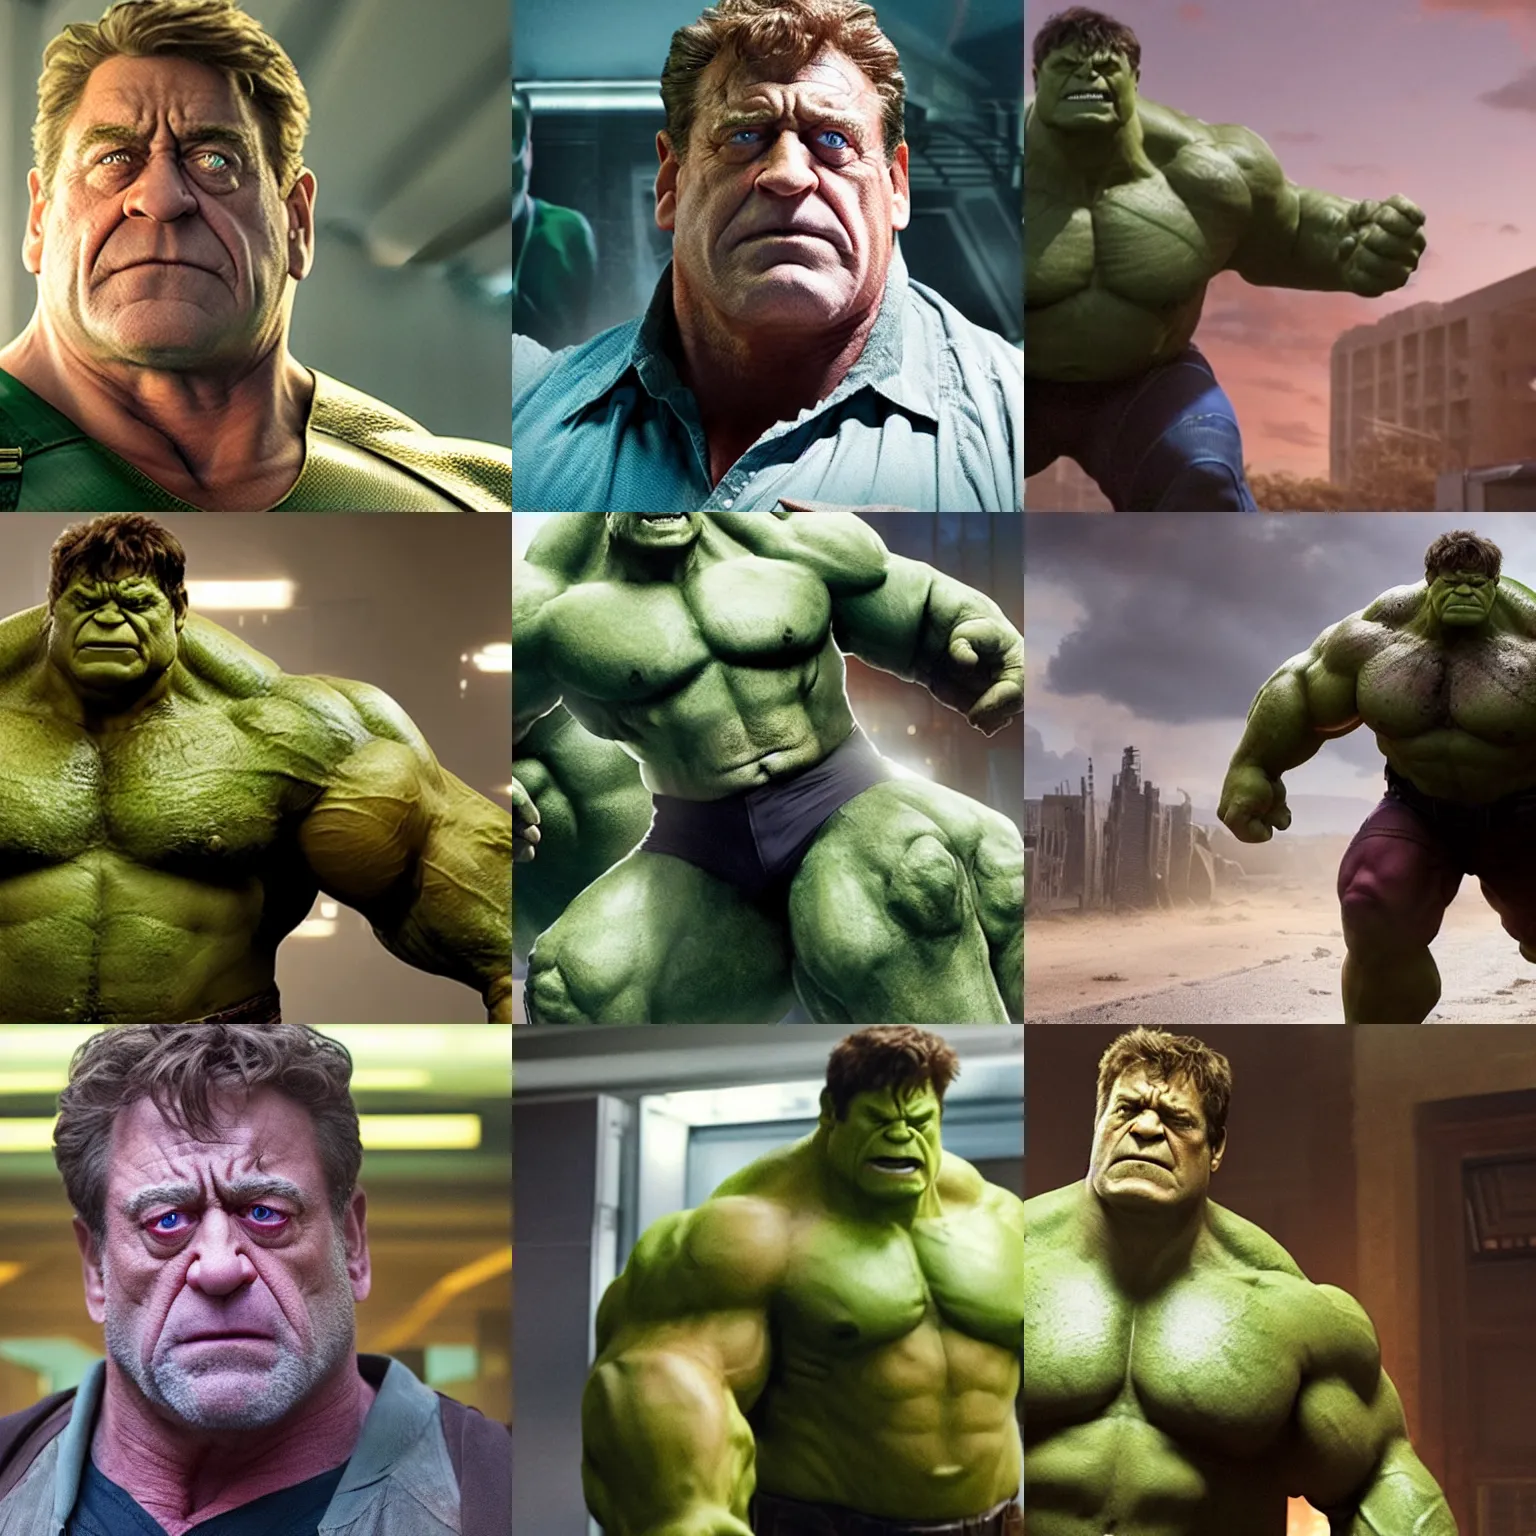 Prompt: film still of john goodman as hulk in avengers endgame